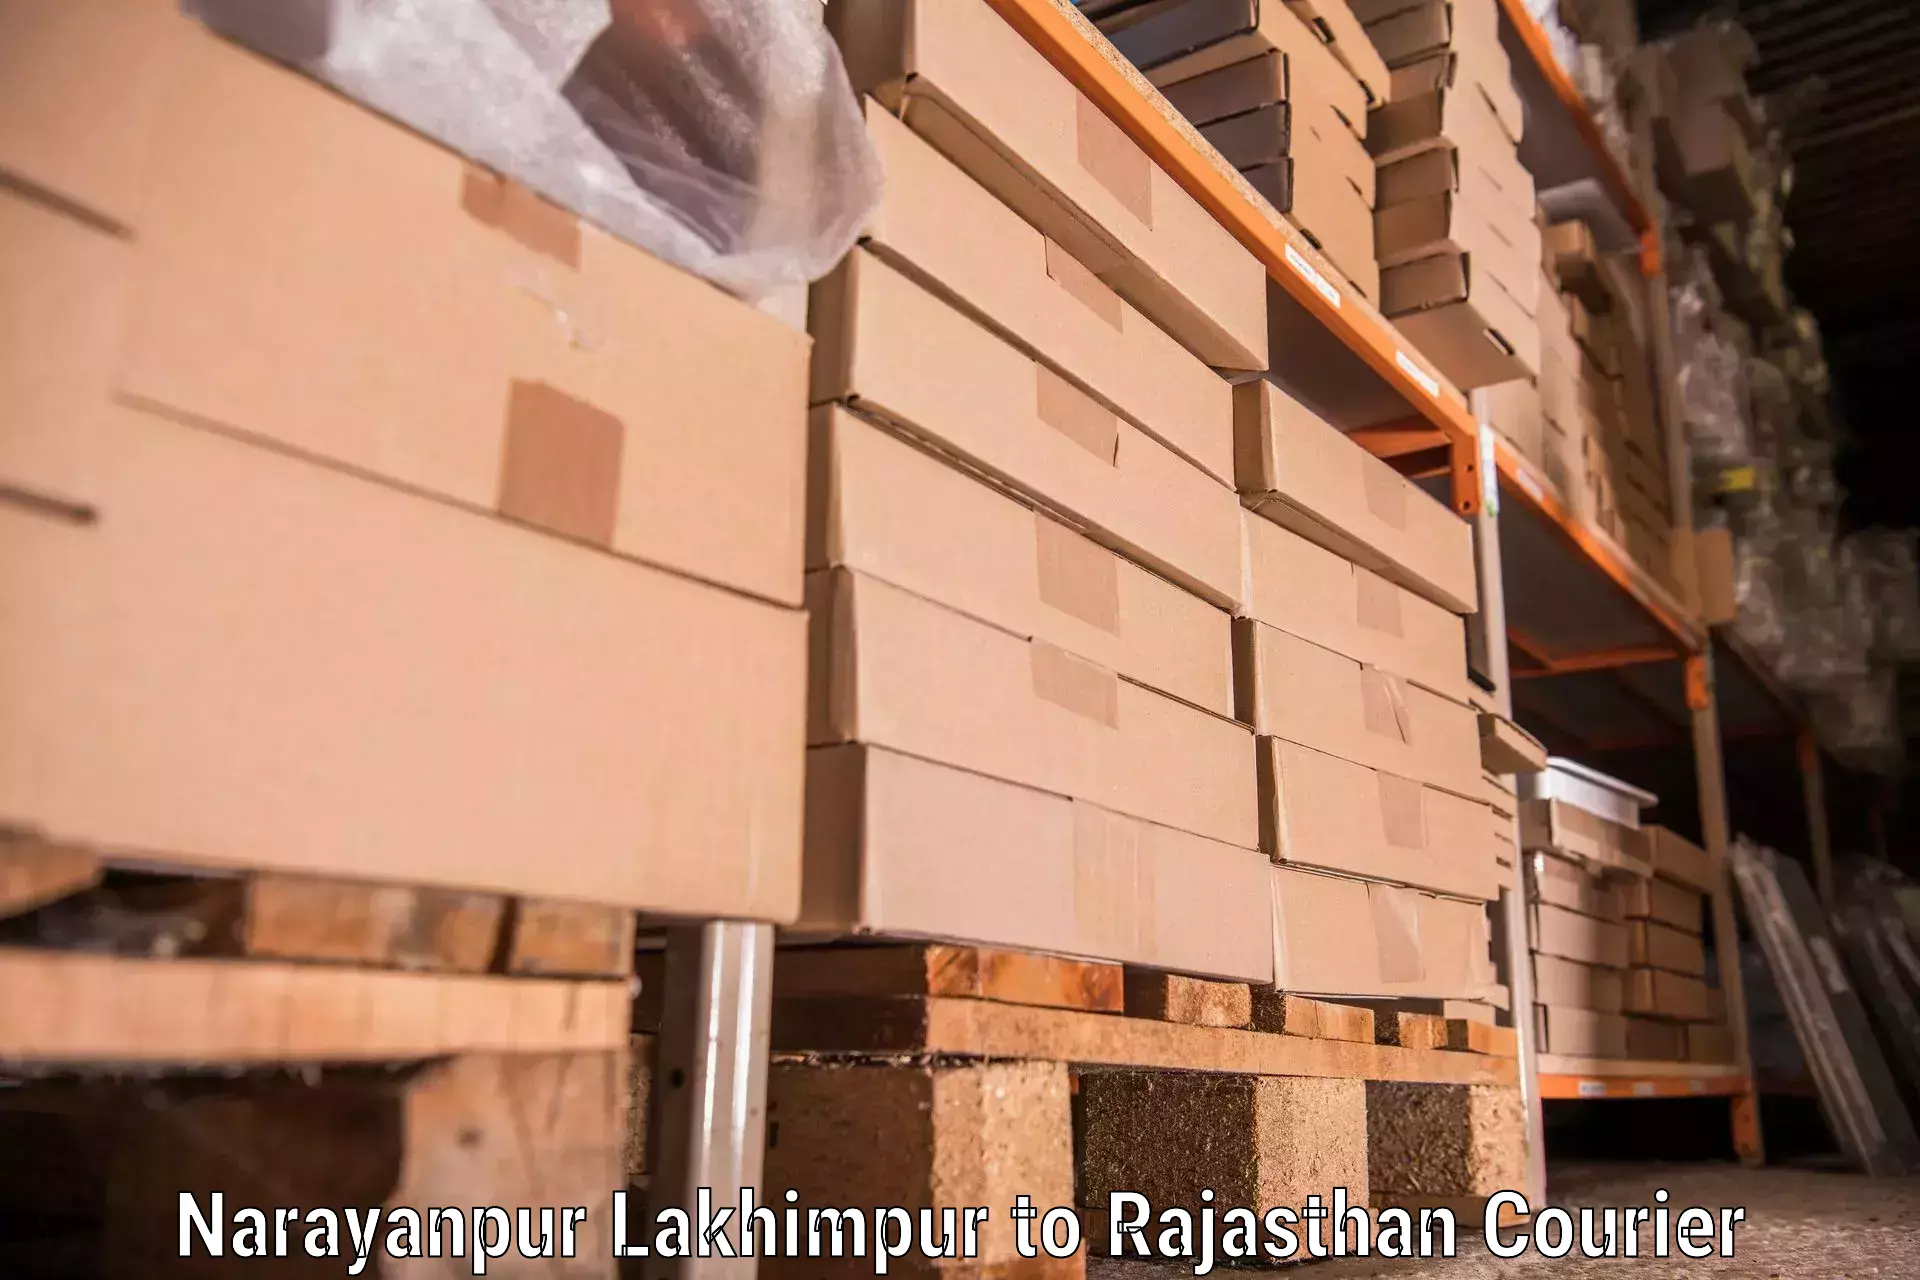 Furniture moving experts Narayanpur Lakhimpur to Achrol